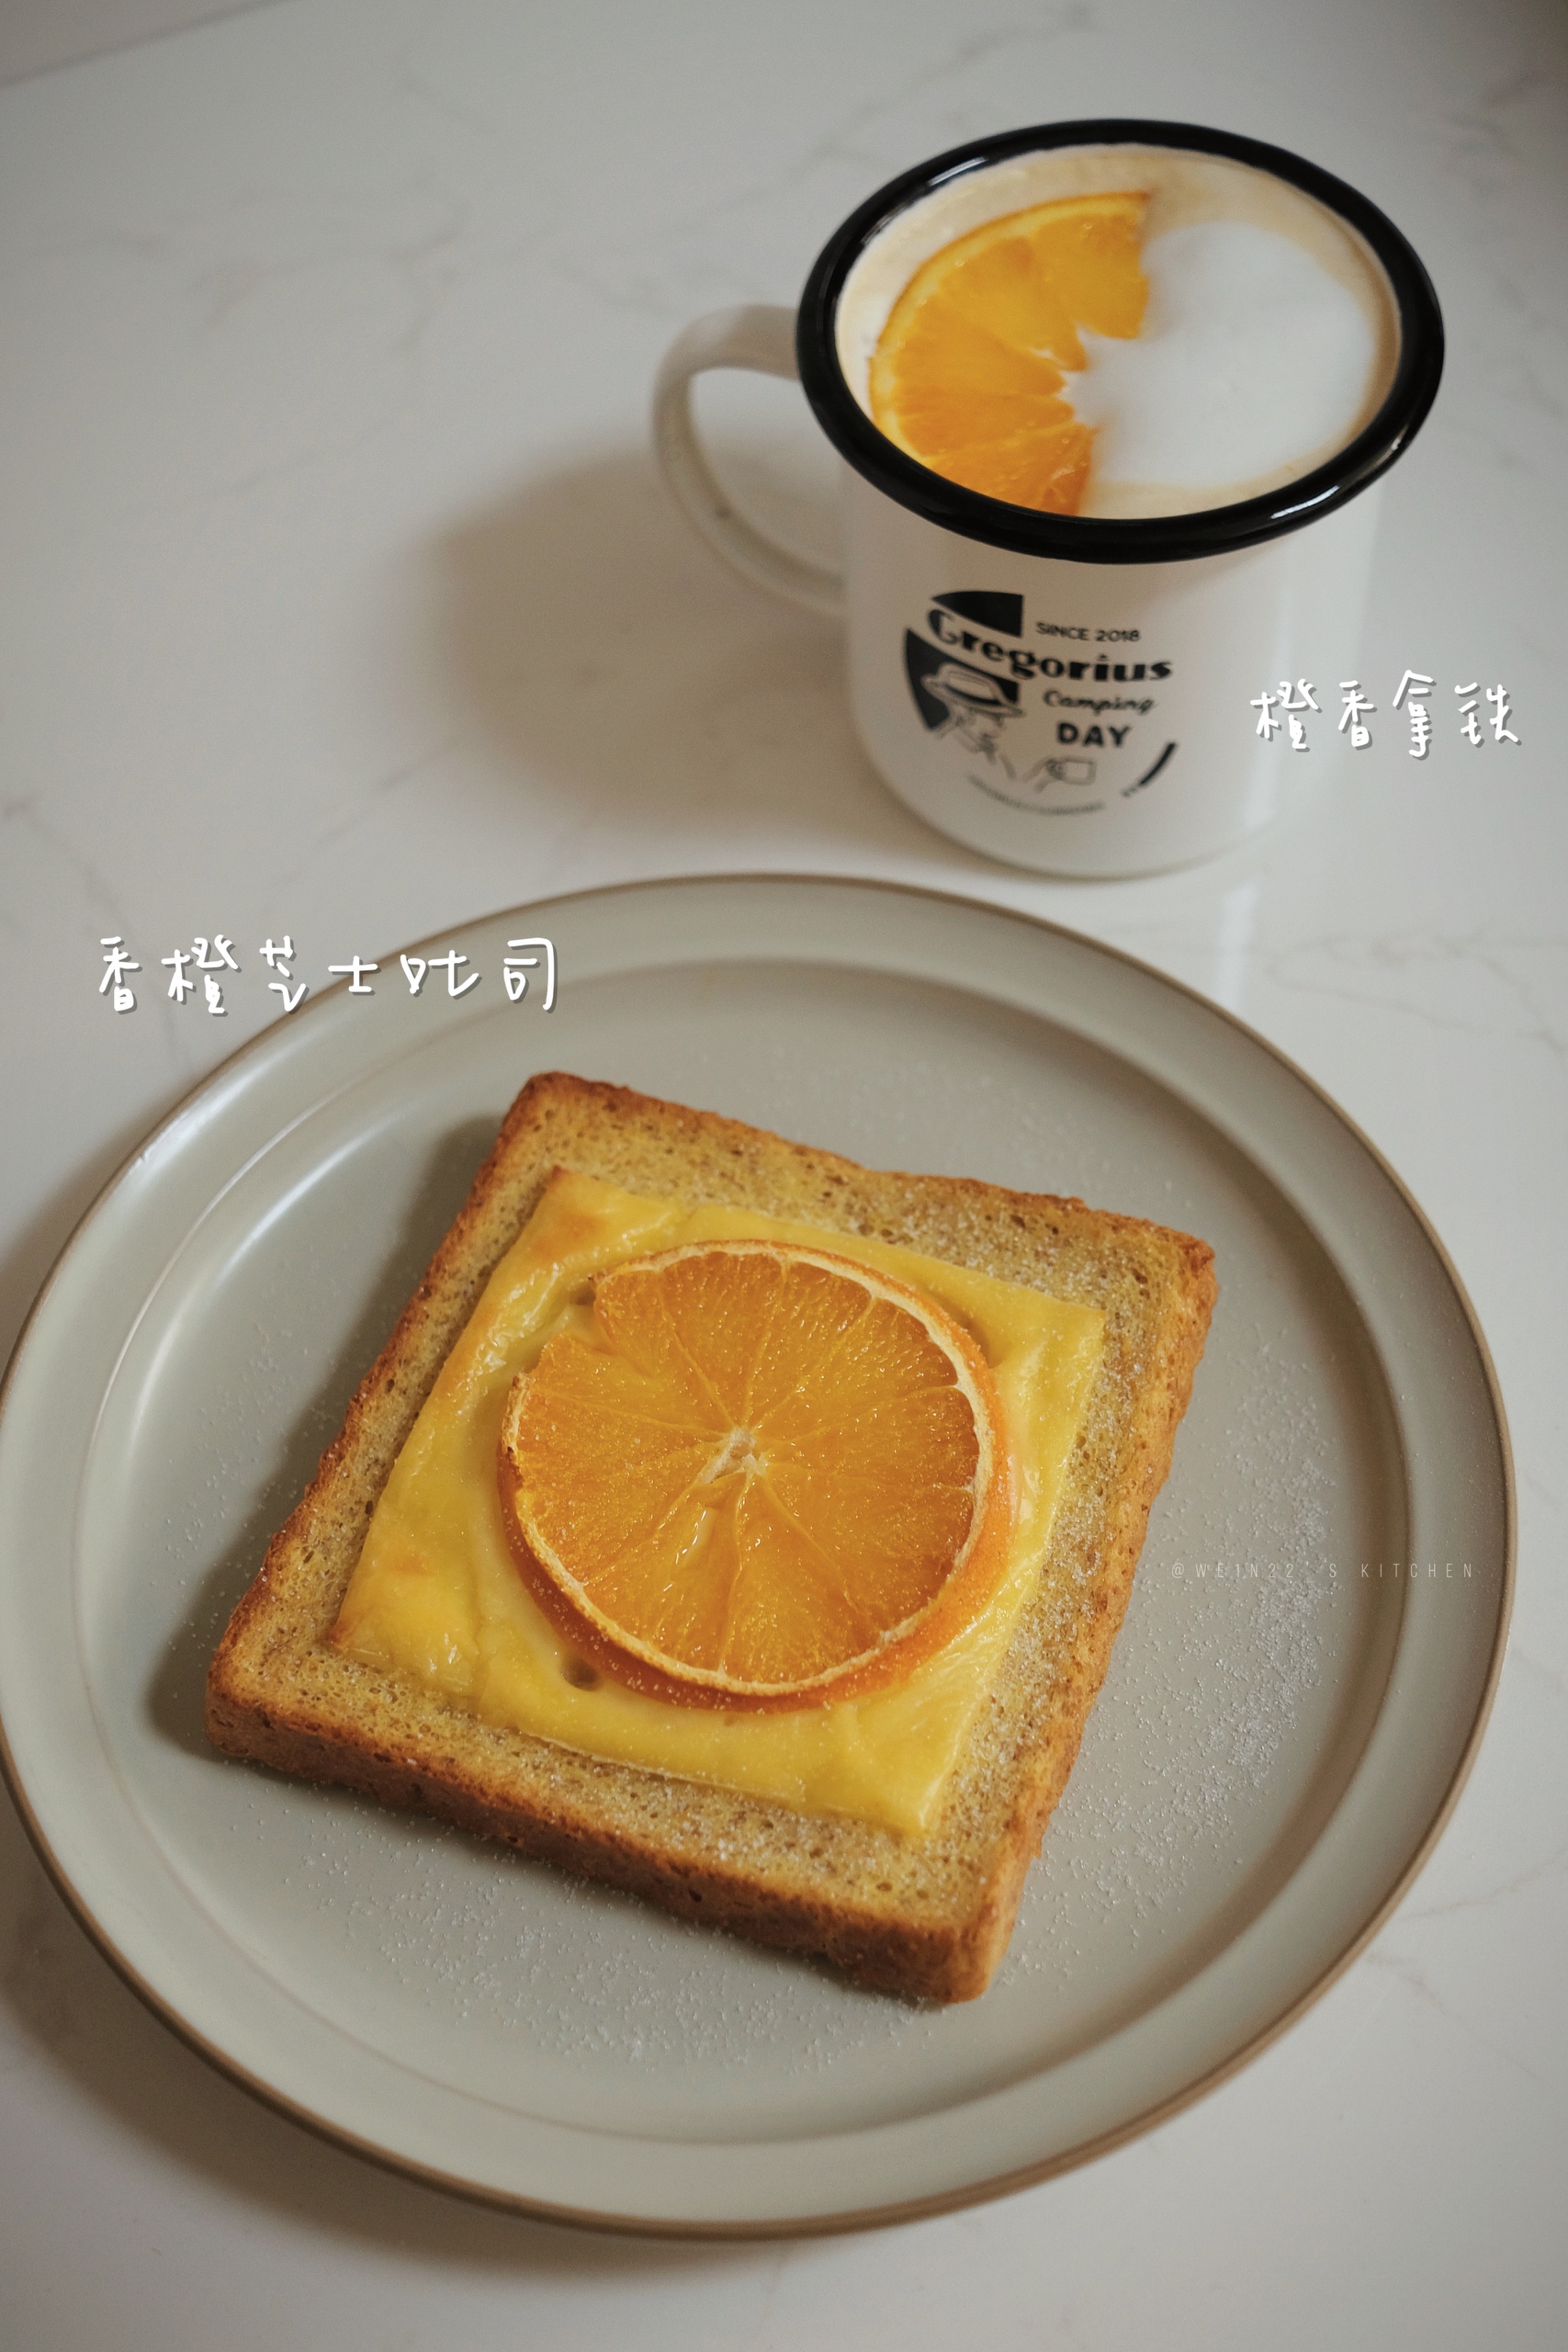 橙🍊意满满的早餐「法式香橙芝士吐司」&「橙香拿铁」的做法